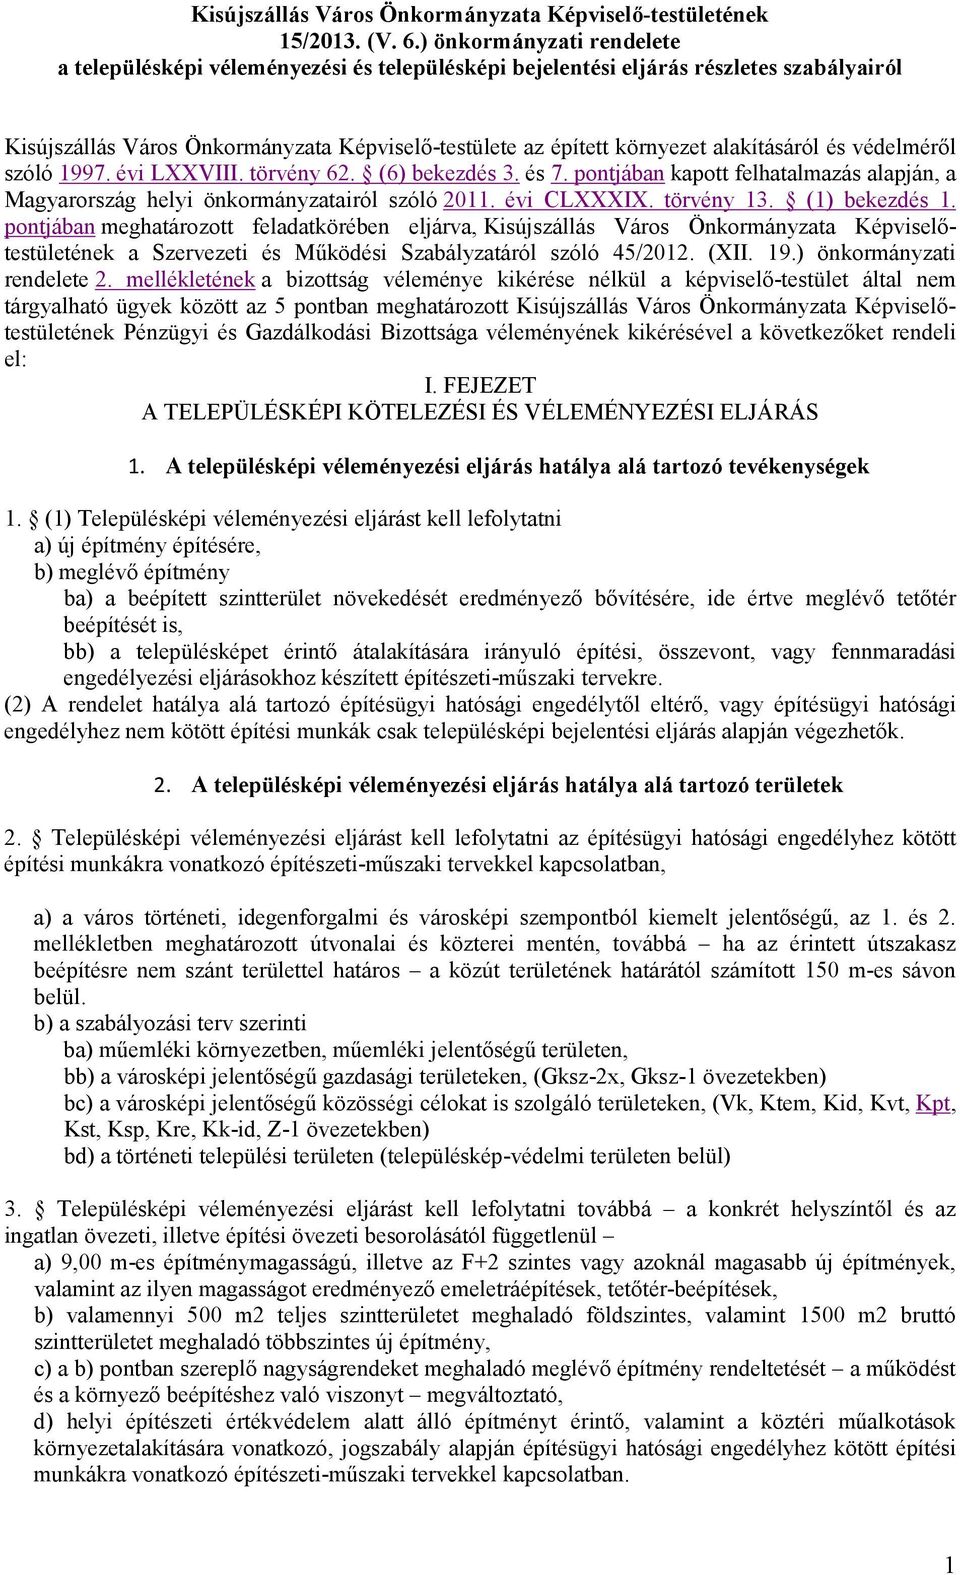 alakításáról és védelméről szóló 1997. évi LXXVIII. törvény 62. (6) bekezdés 3. és 7. pontjában kapott felhatalmazás alapján, a Magyarország helyi önkormányzatairól szóló 2011. évi CLXXXIX.